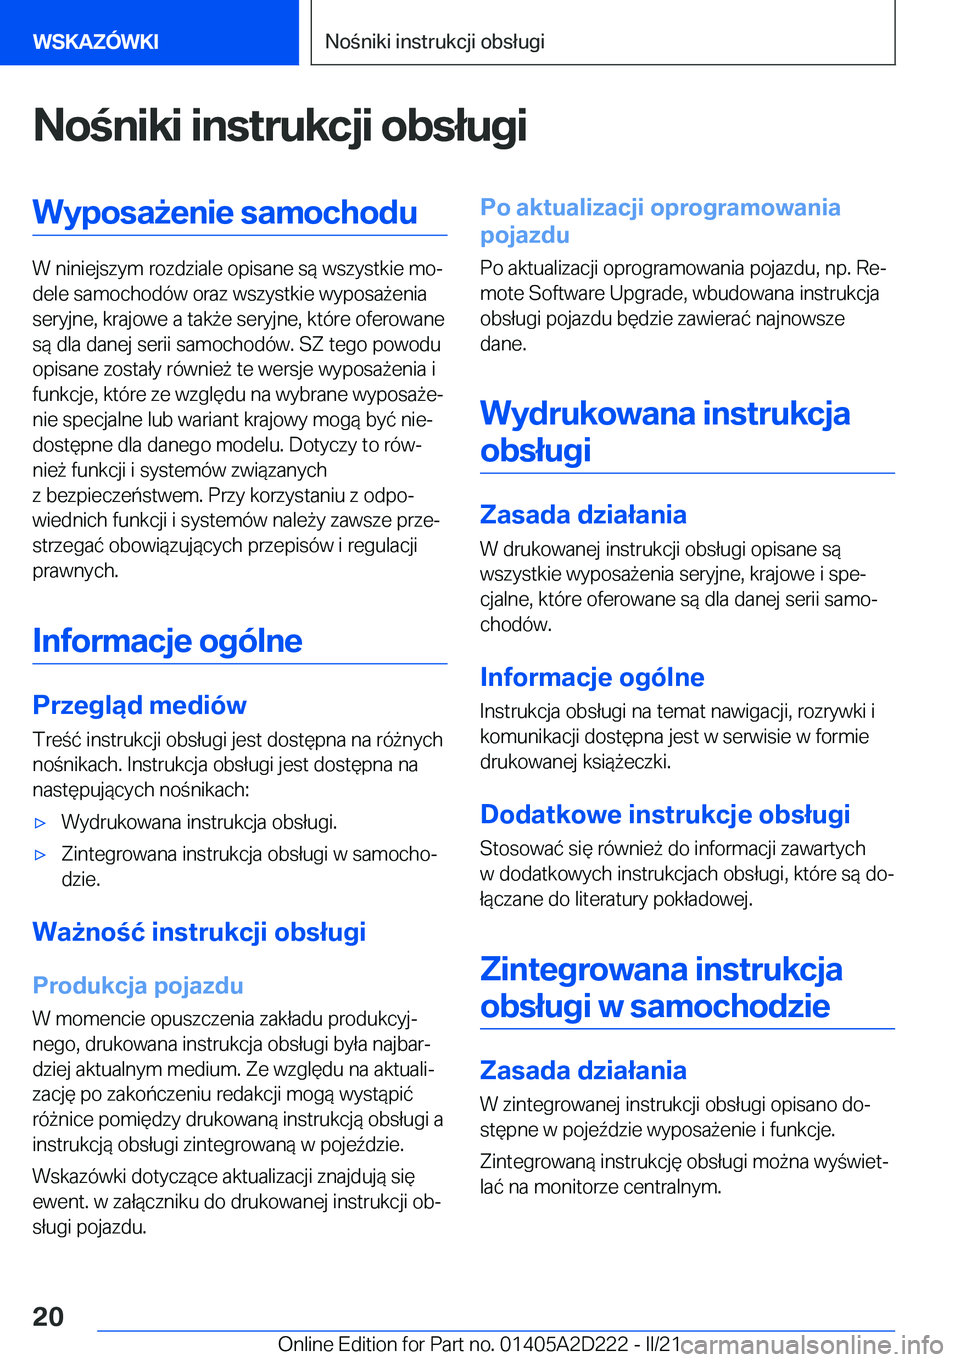 BMW X6 M 2021  Instrukcja obsługi (in Polish) �N�o�n�i�k�i��i�n�s�t�r�u�k�c�j�i��o�b�s�ł�u�g�i�W�y�p�o�s�a9�e�n�i�e��s�a�m�o�c�h�o�d�u
�W��n�i�n�i�e�j�s�z�y�m��r�o�z�d�z�i�a�l�e��o�p�i�s�a�n�e��s�